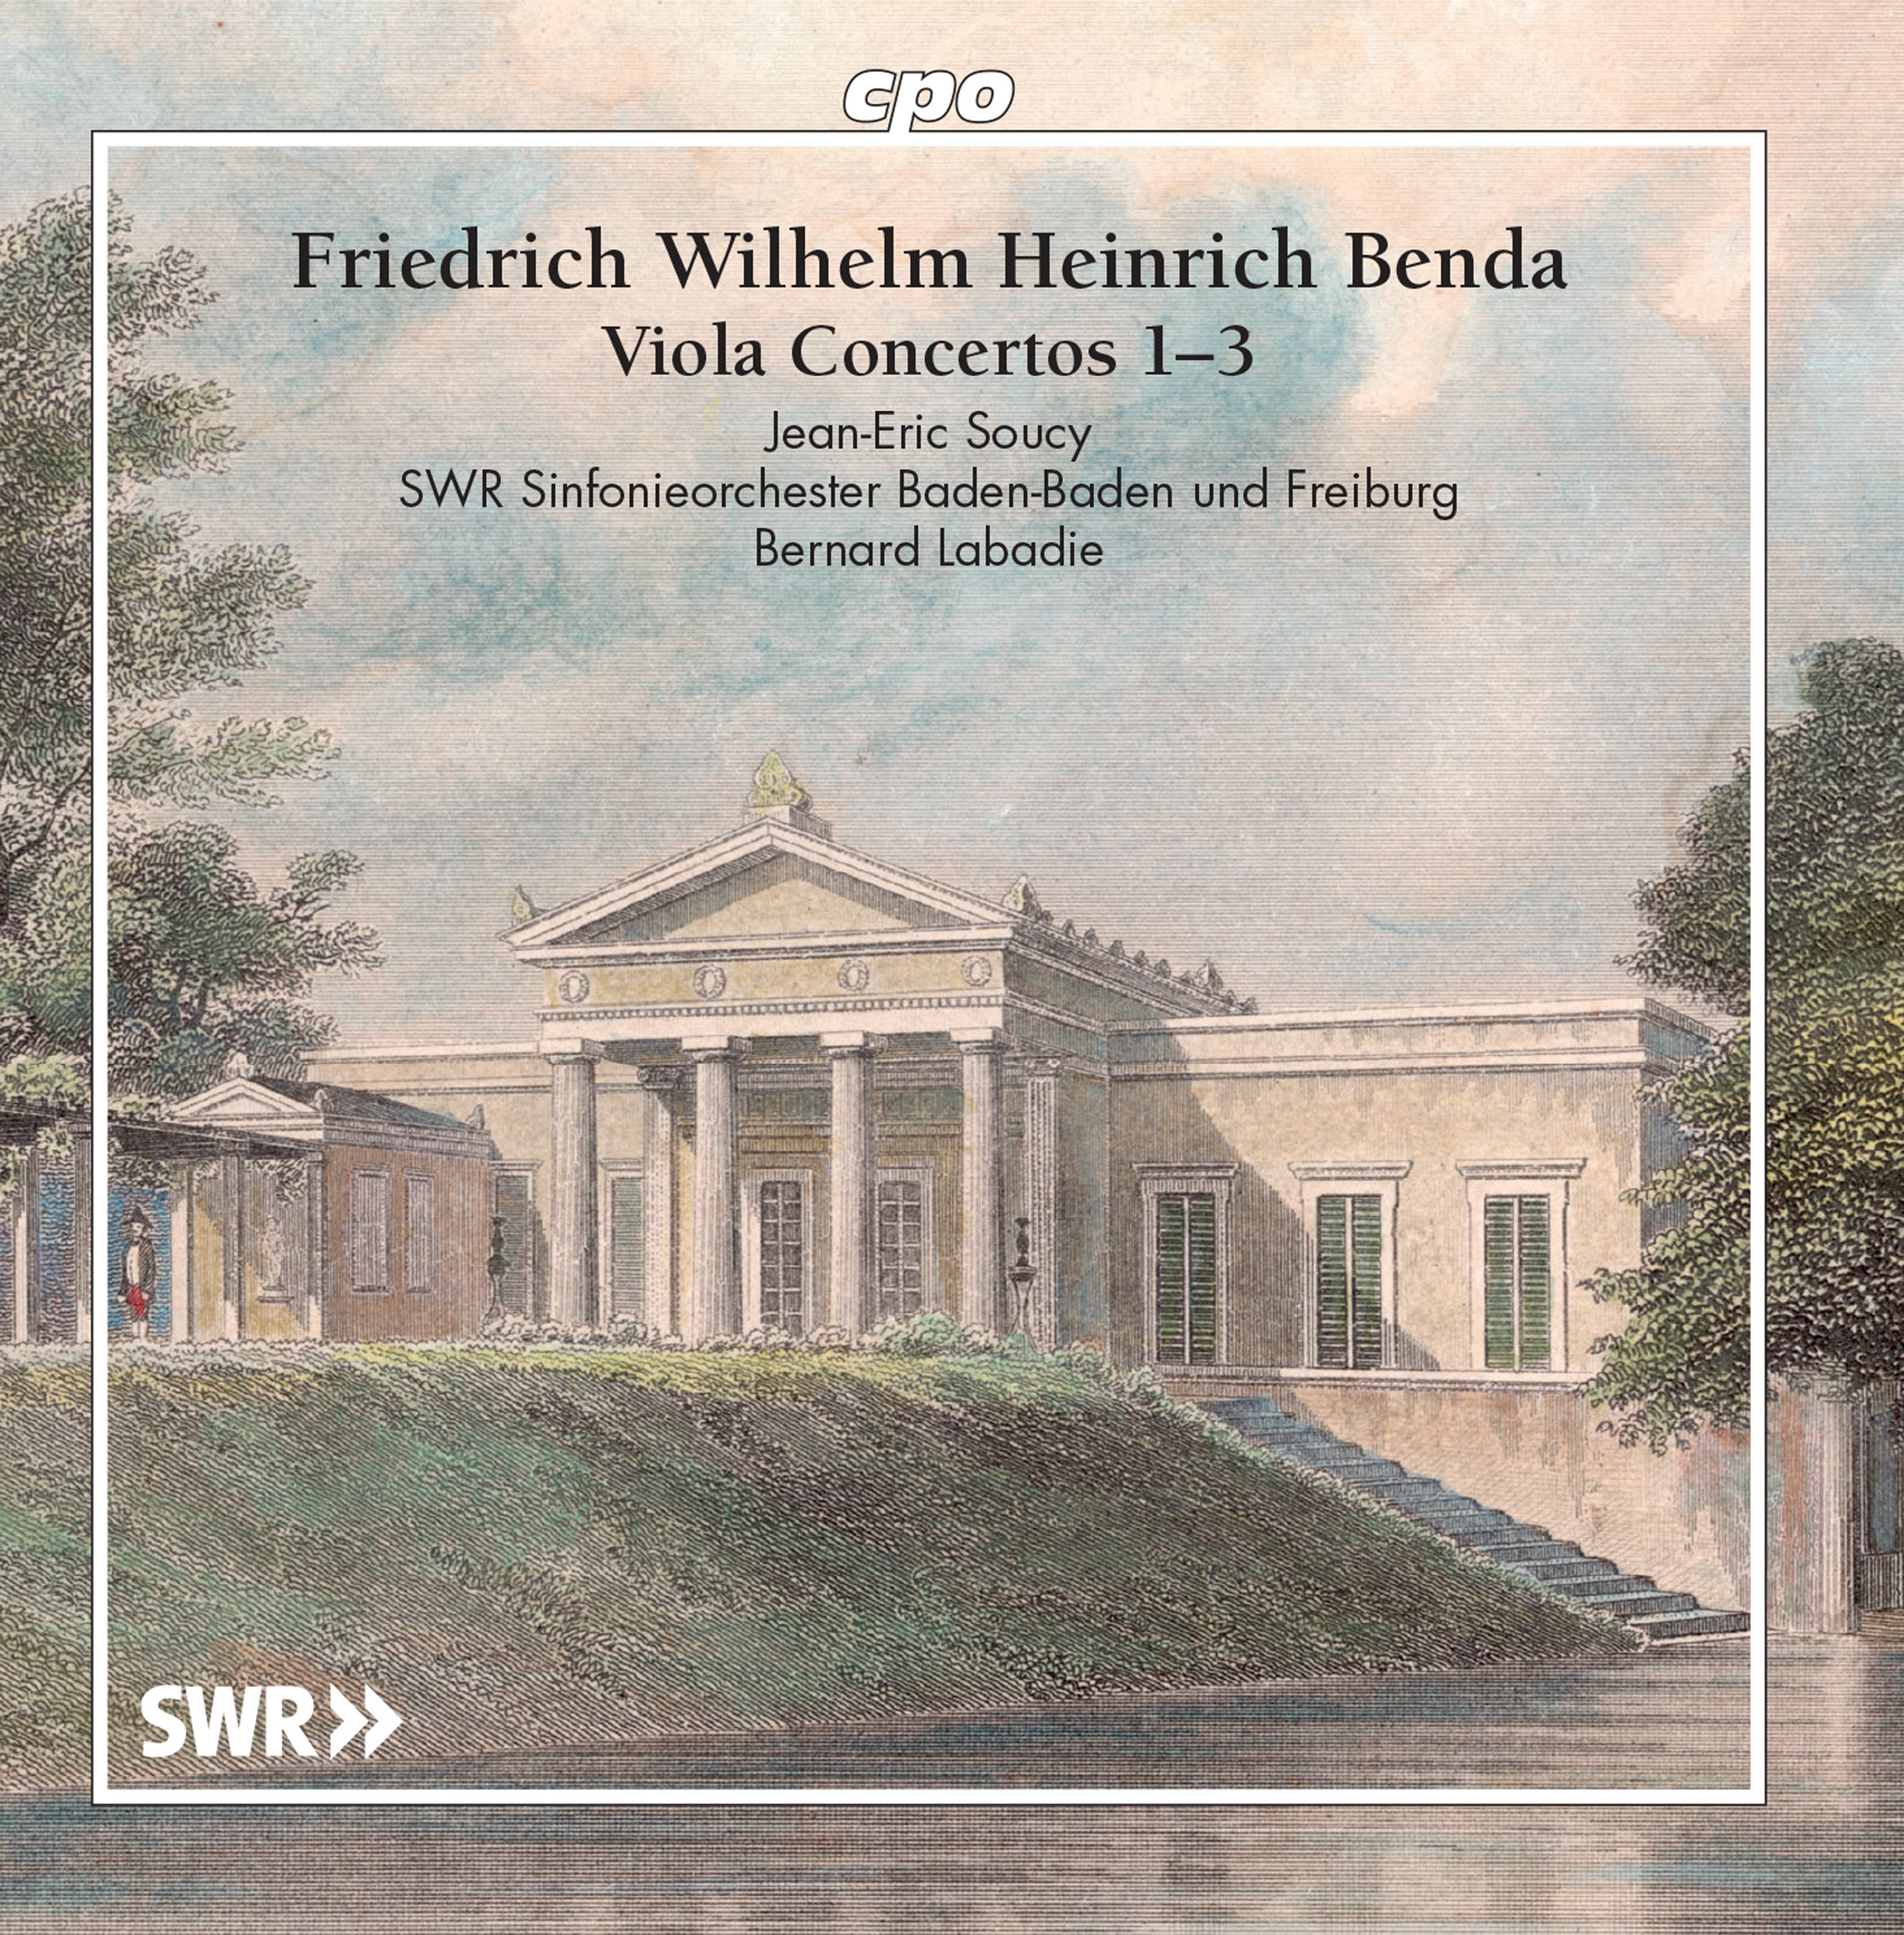 Viola Concerto No. 1 in F Major, LorB 314: III. Rondeau